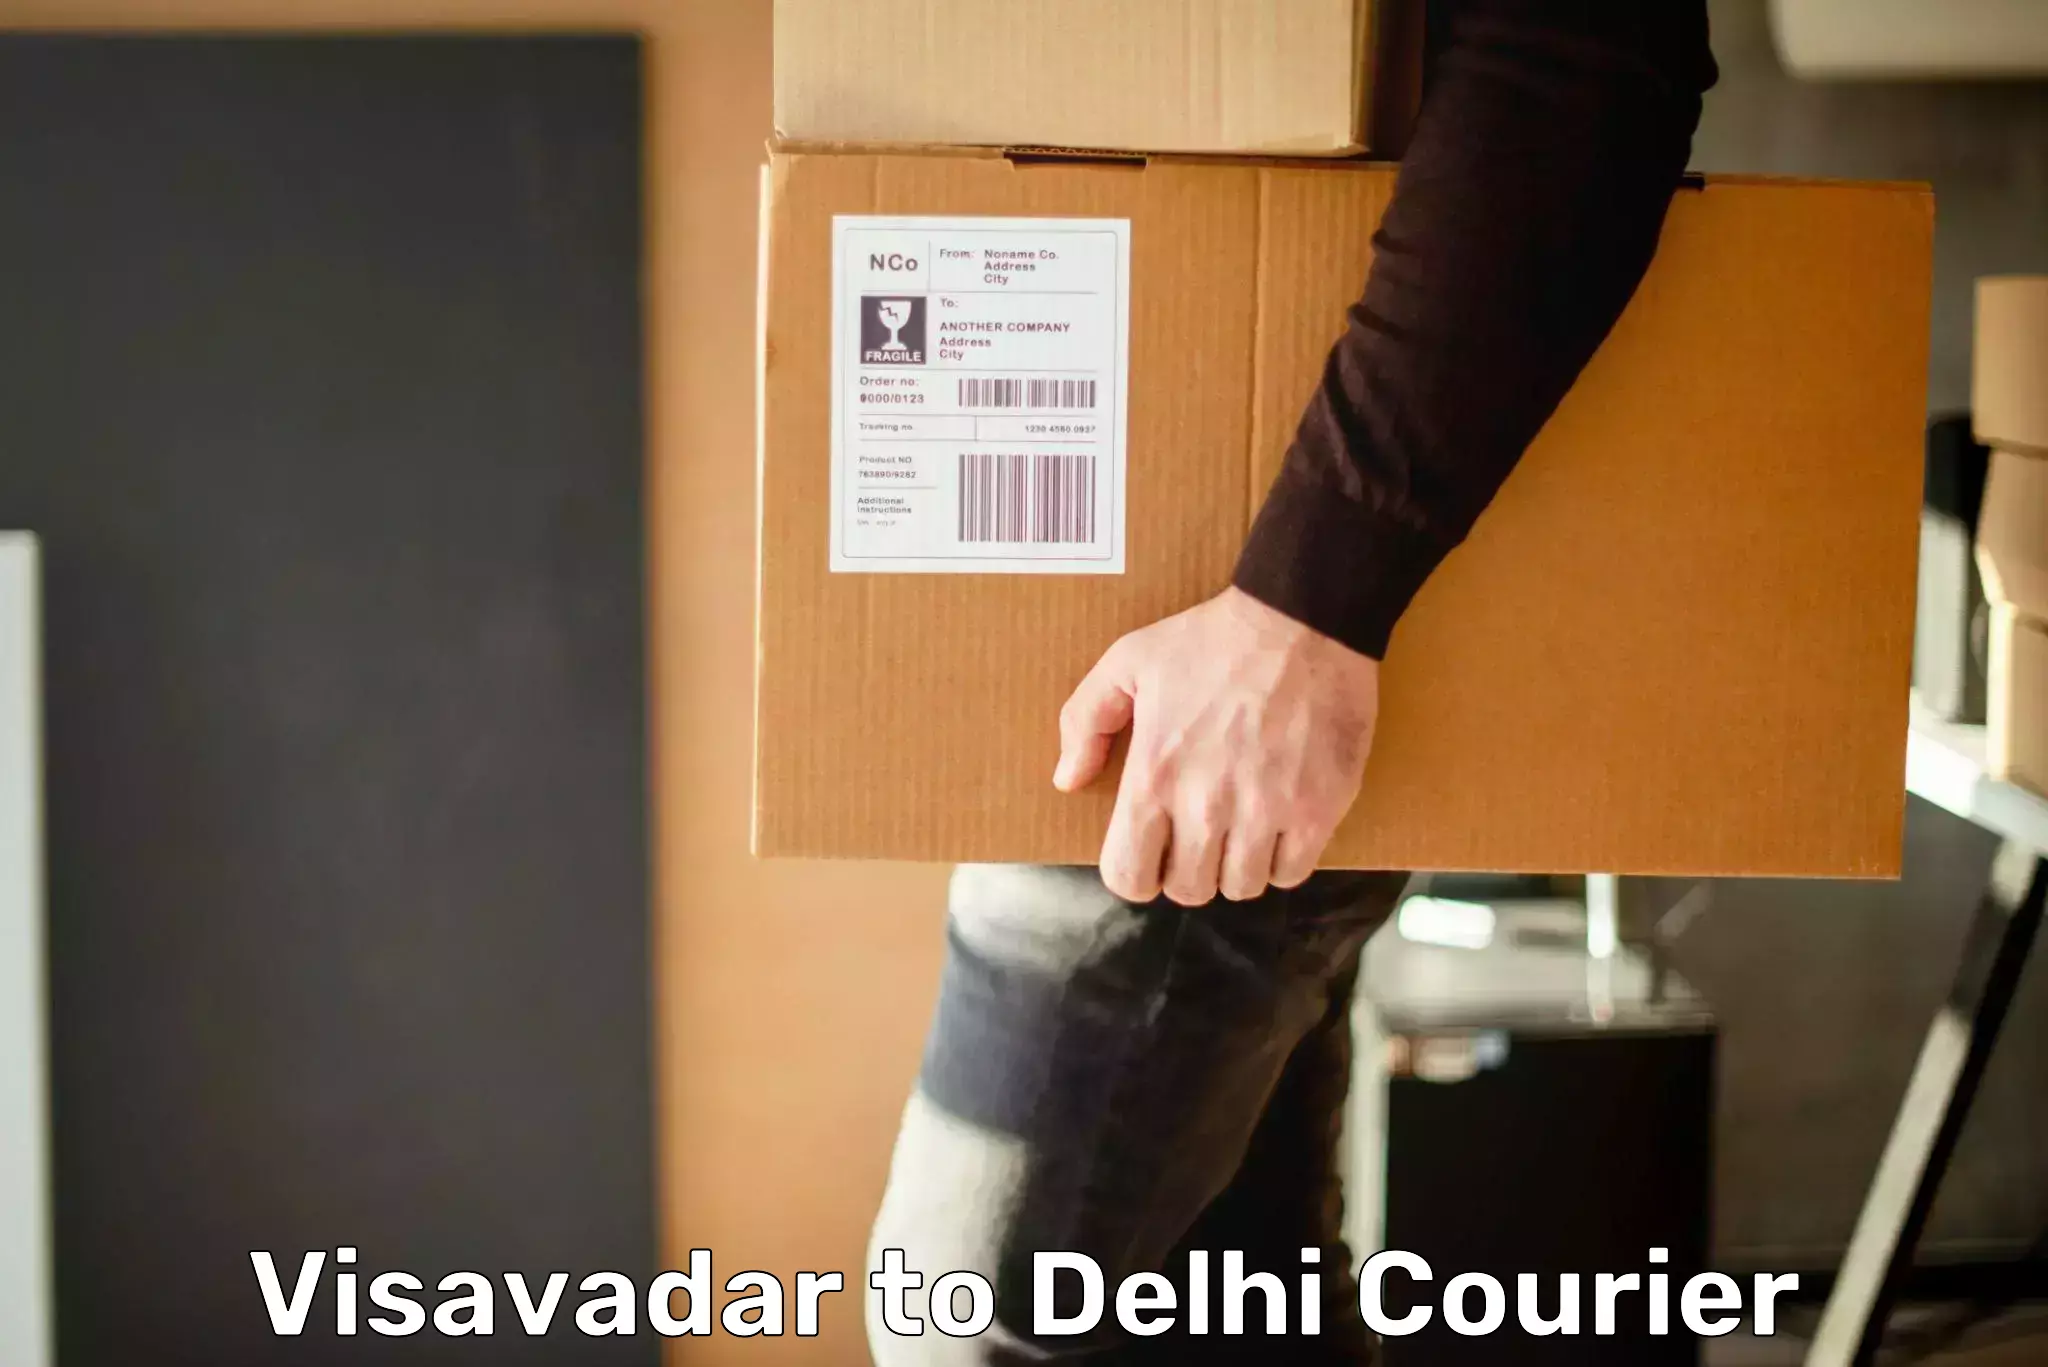 Rapid shipping services Visavadar to Delhi